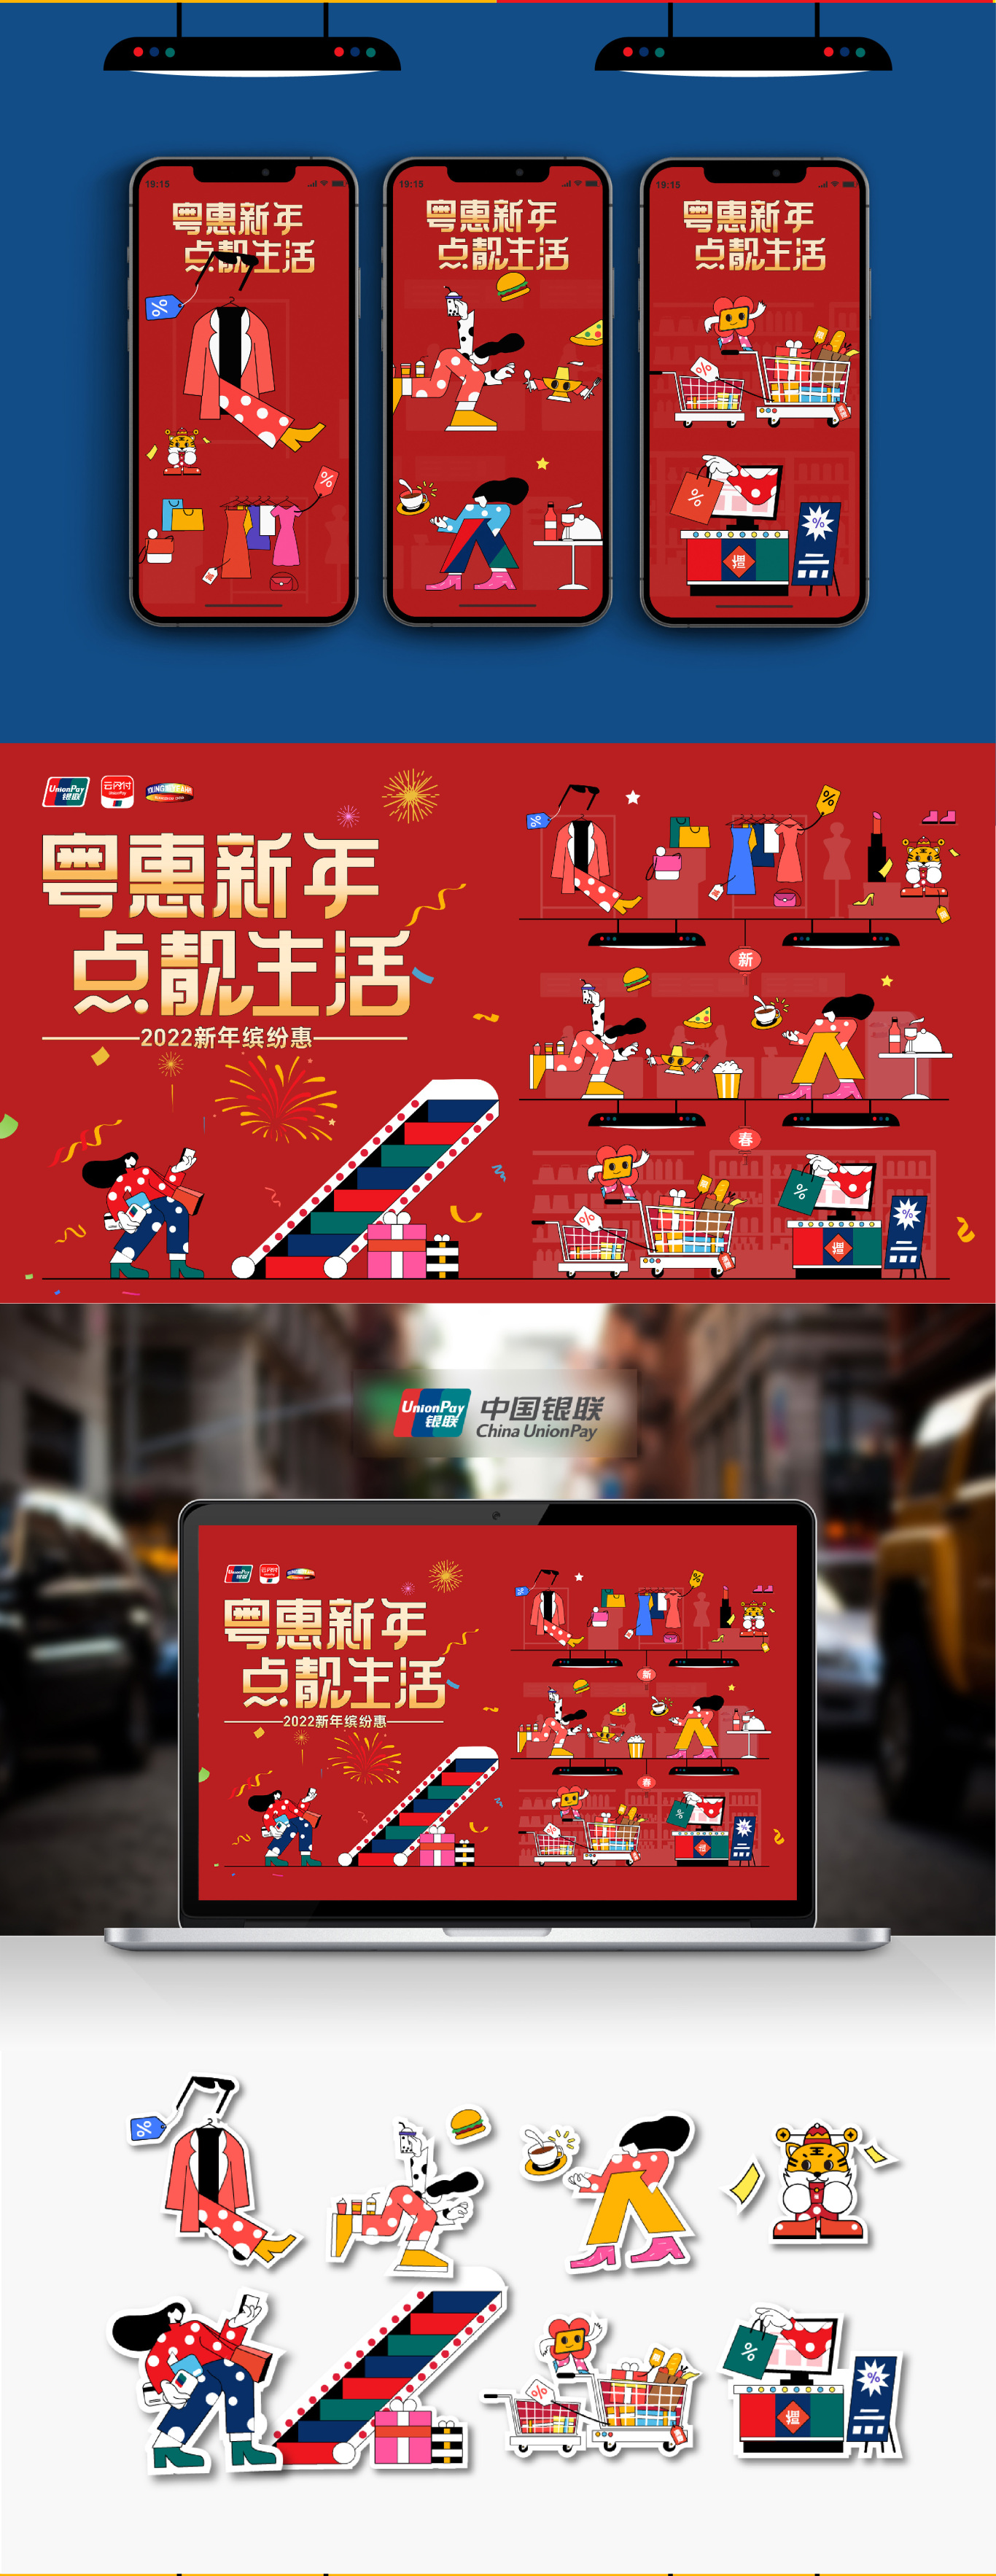 廣東銀聯2022年跨年購物季活動一一粵惠新年，點靚生活圖1